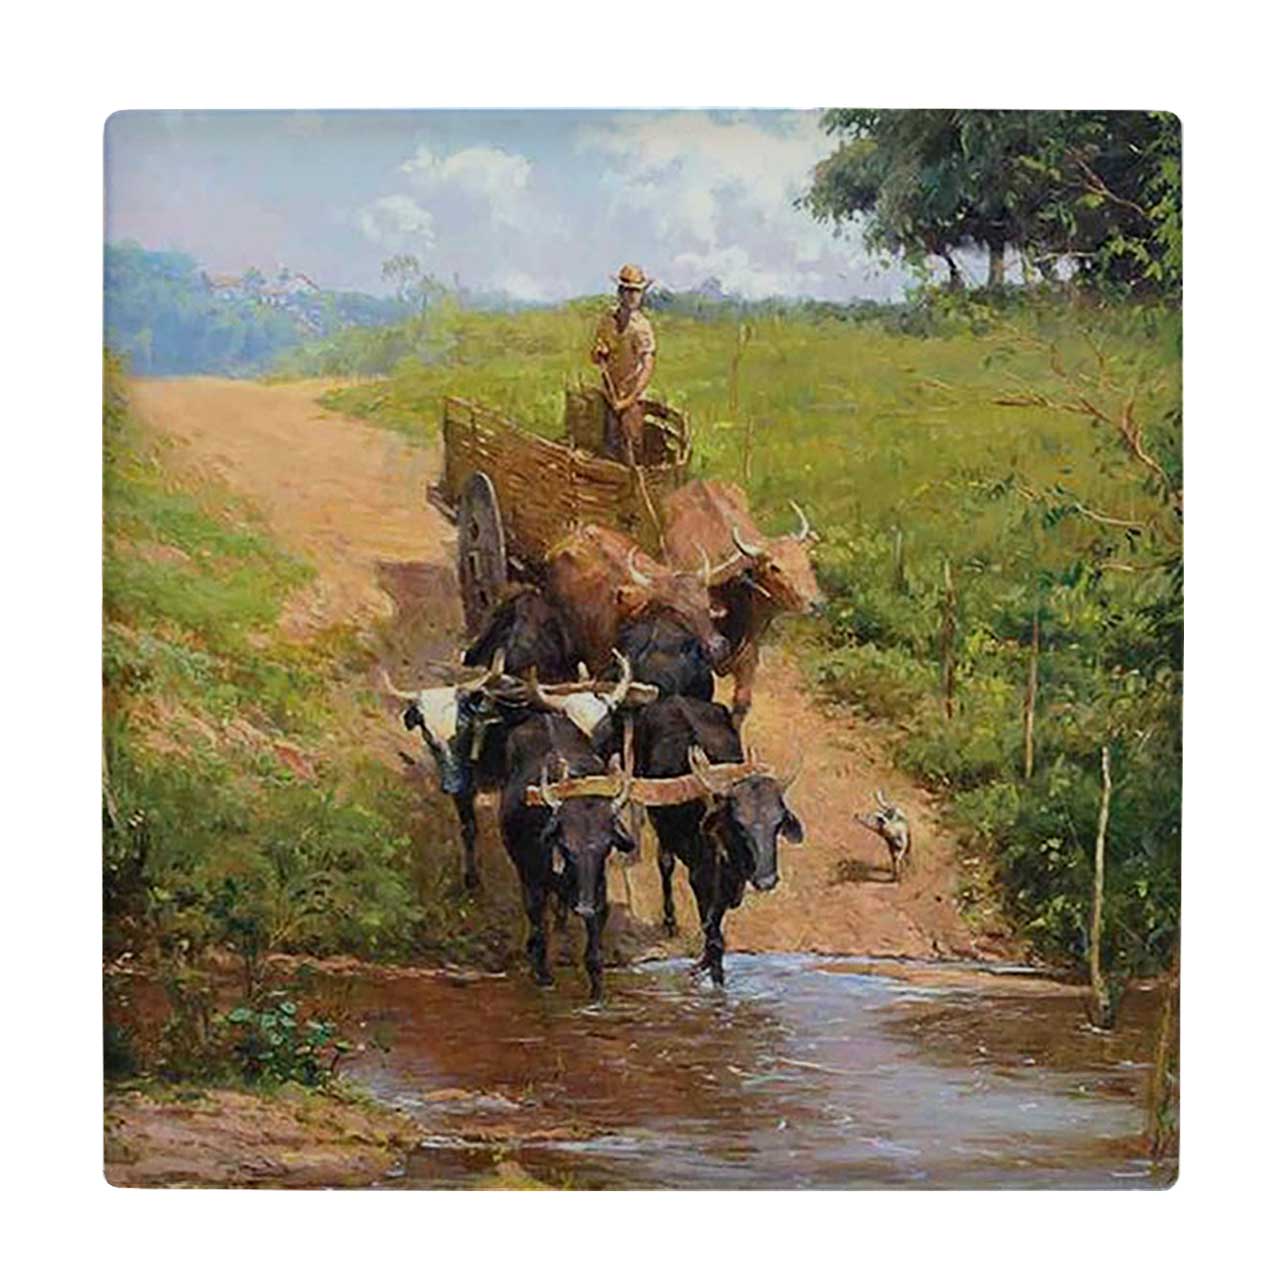  زیر لیوانی  طرح نقاشی مرد کشاورز سوار بر گاری کد    5767997_4022